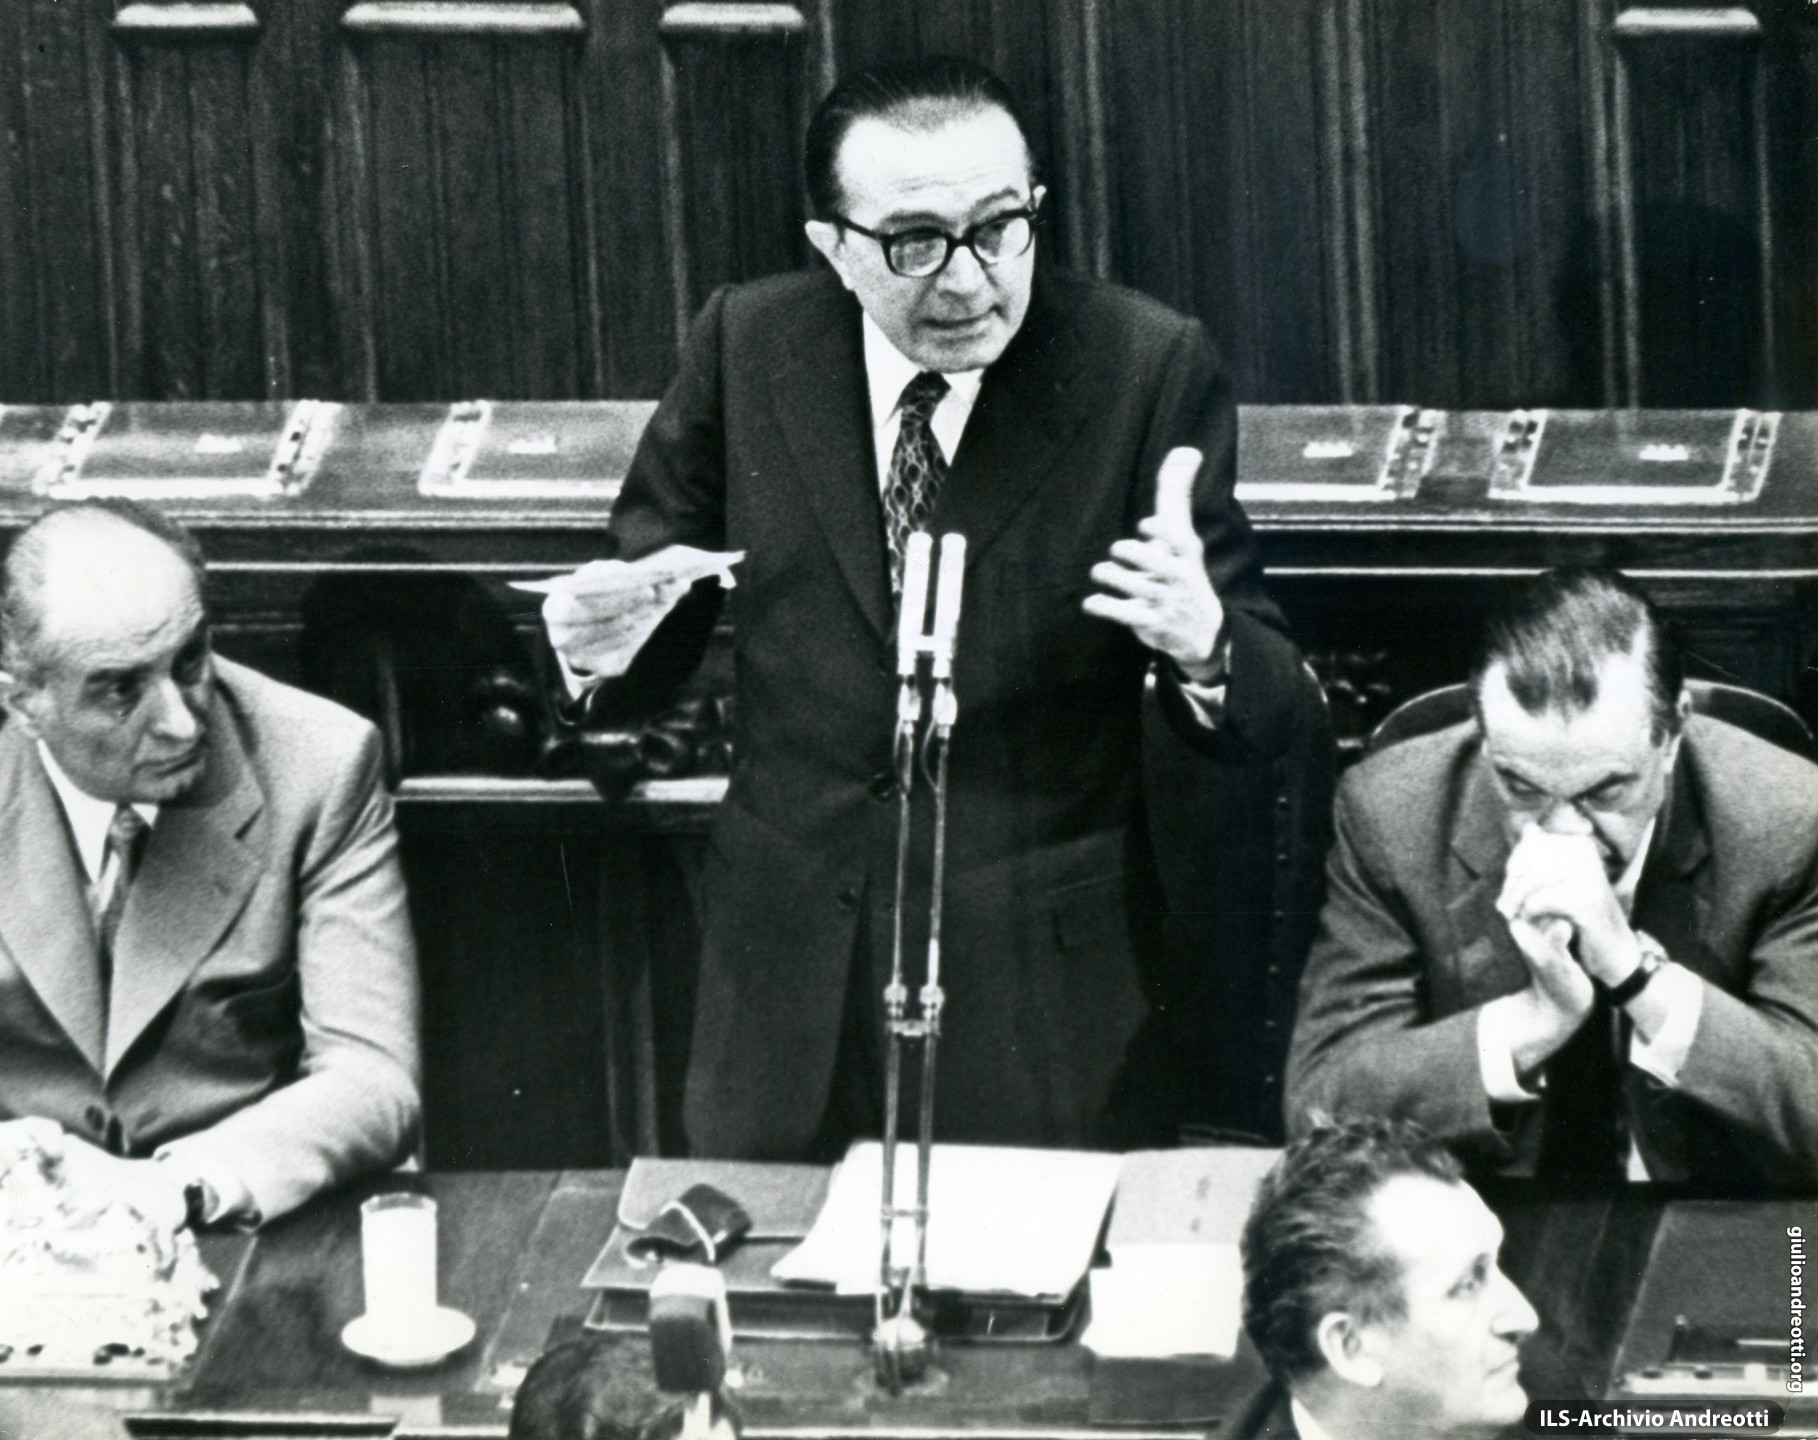 7 luglio 1972. Presentazione alla Camera del Governo Andreotti II accanto al presidente Mario Tanassi, Giovanni Malagodi.